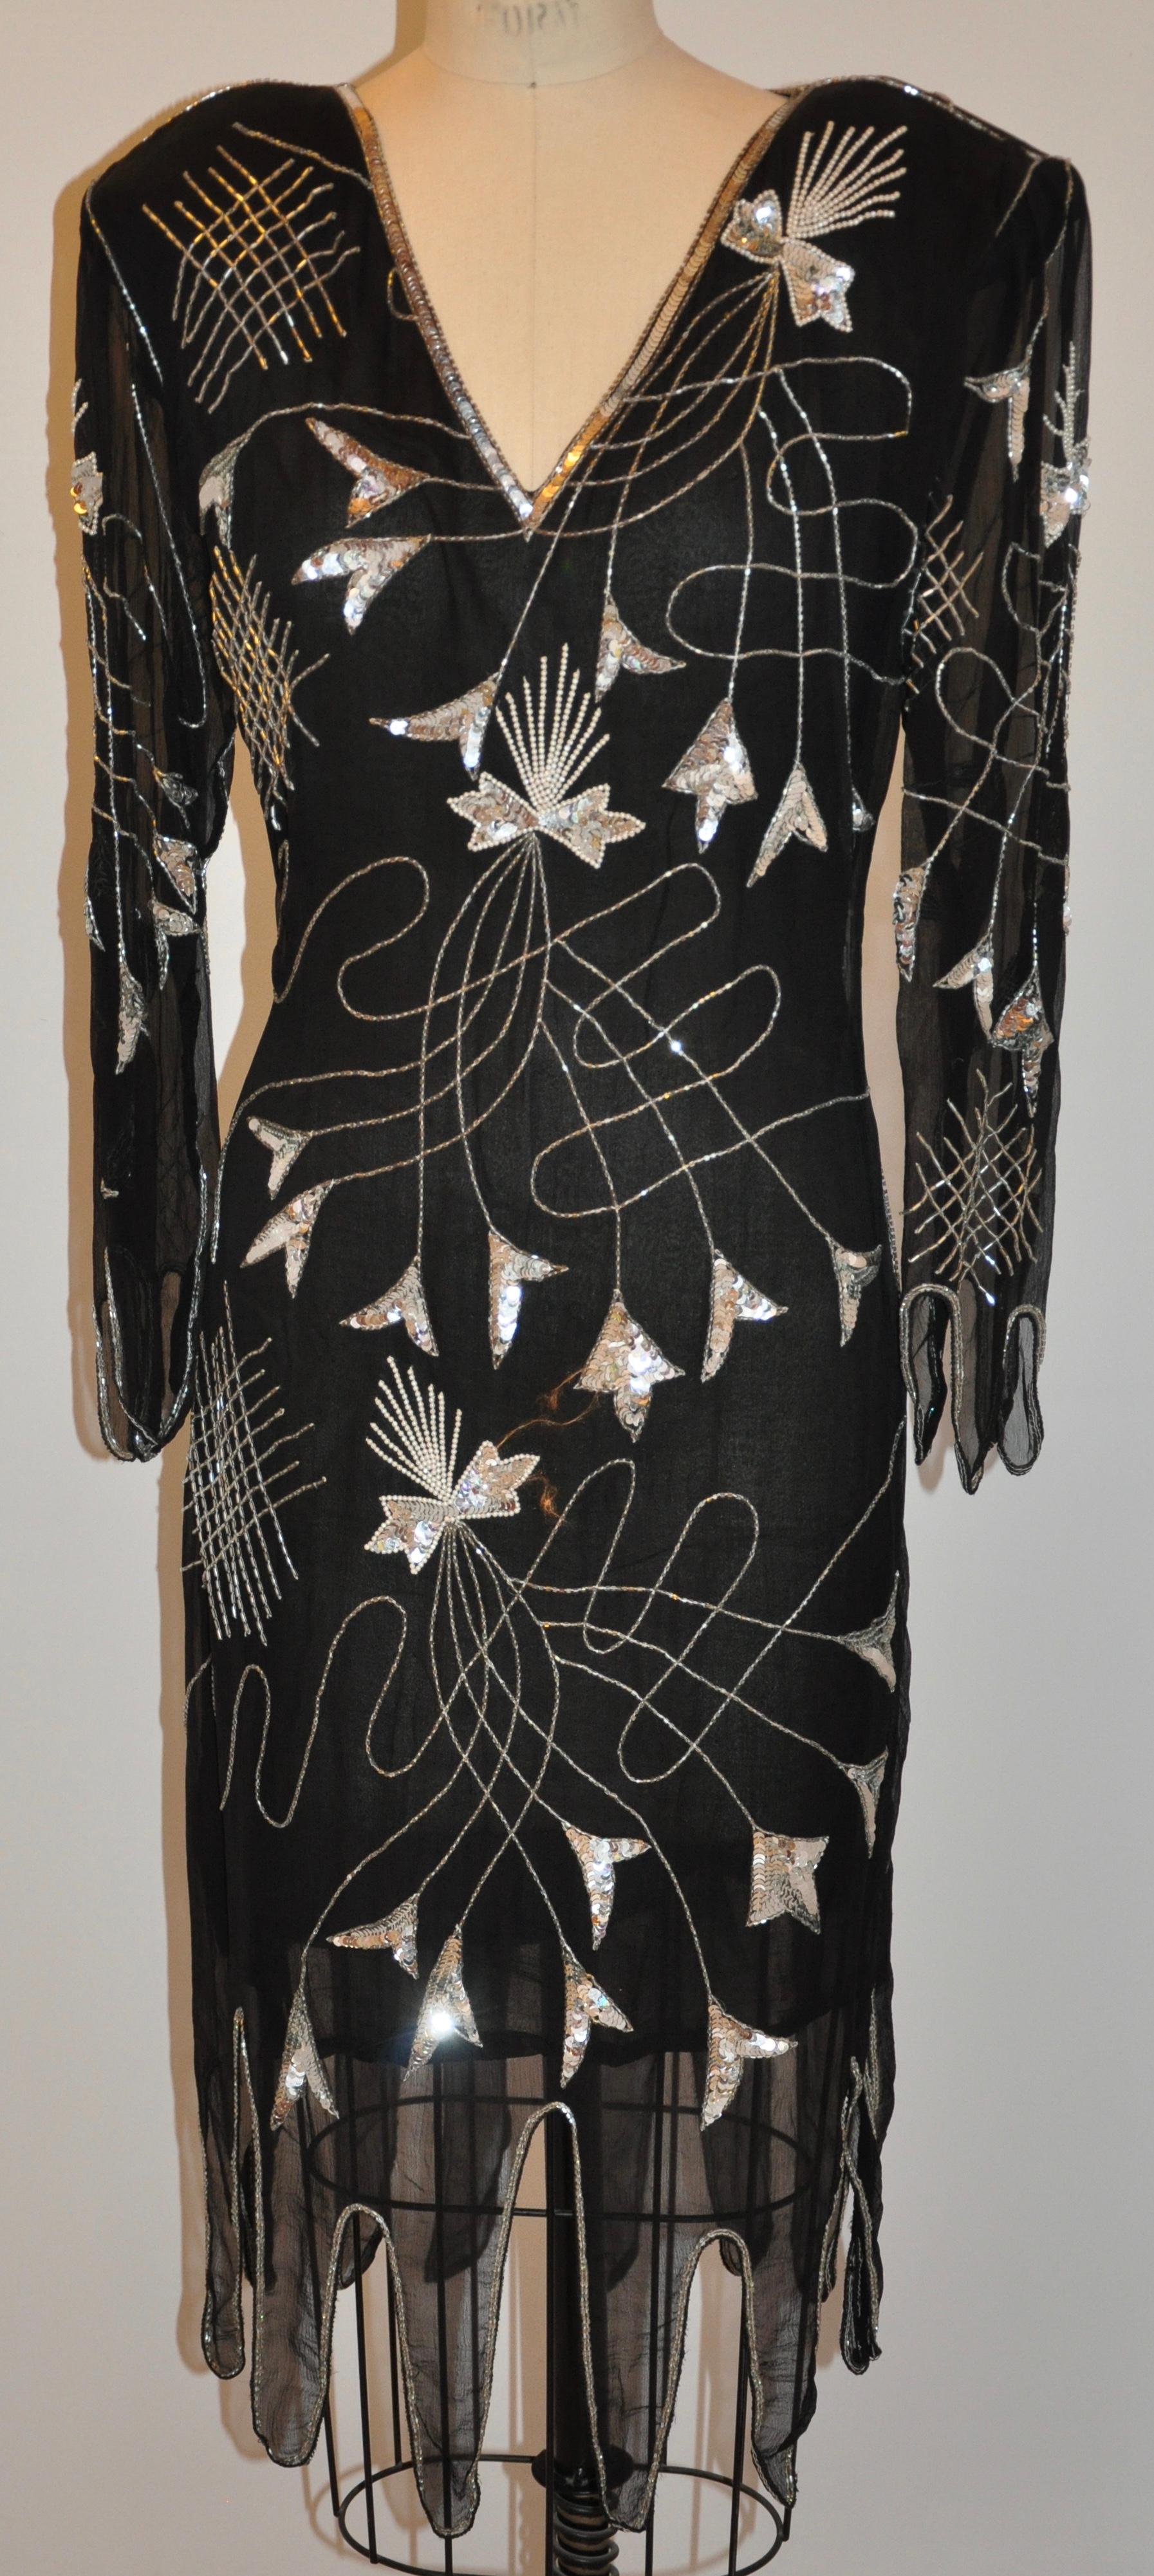        La robe de soirée Sweet Lo Iconic des années 1970 en mousseline de soie noire à double épaisseur, avec un ourlet et des manches festonnés et perlés, mesure 46 pouces de long. Les épaules mesurent 18 pouces, la distance entre l'encolure et la